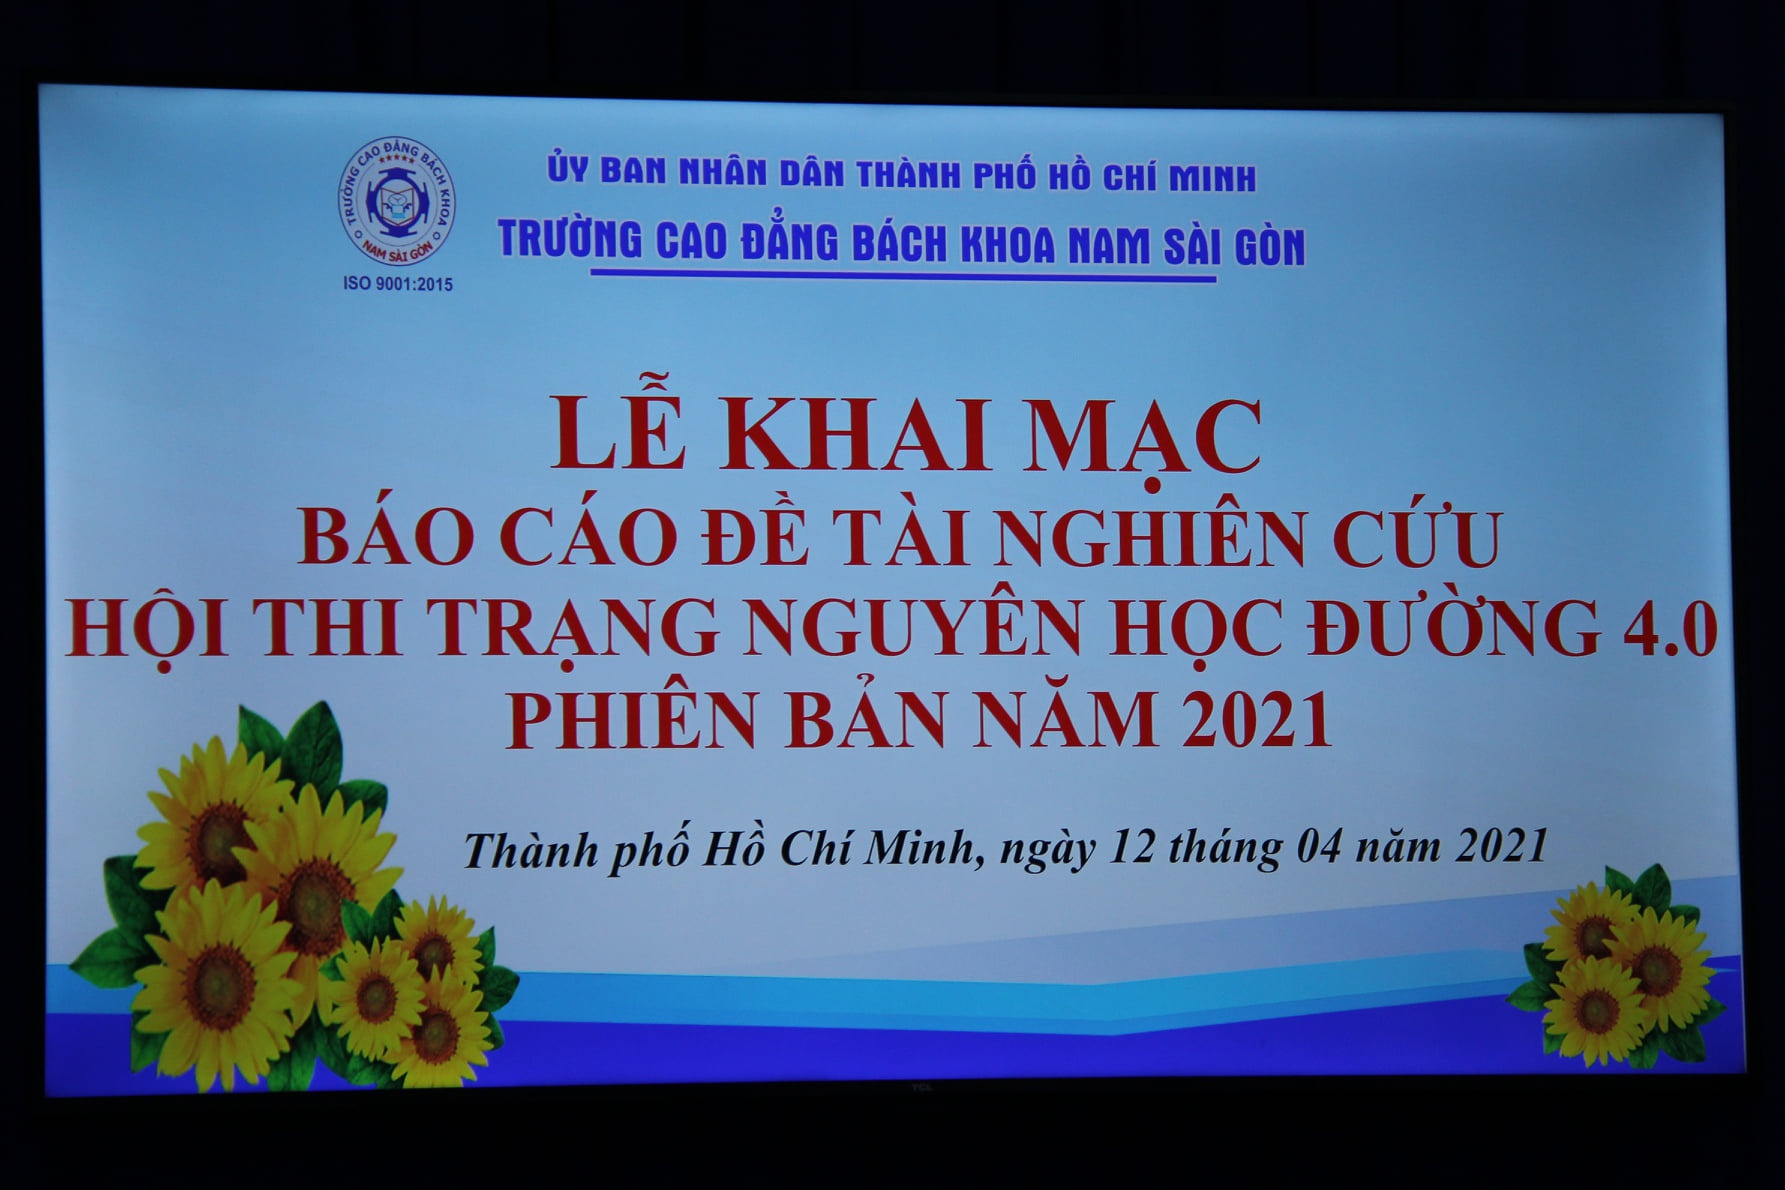 Le Khai Mac Bao Cao De Tai Nghien Cuu Khoa Hoc